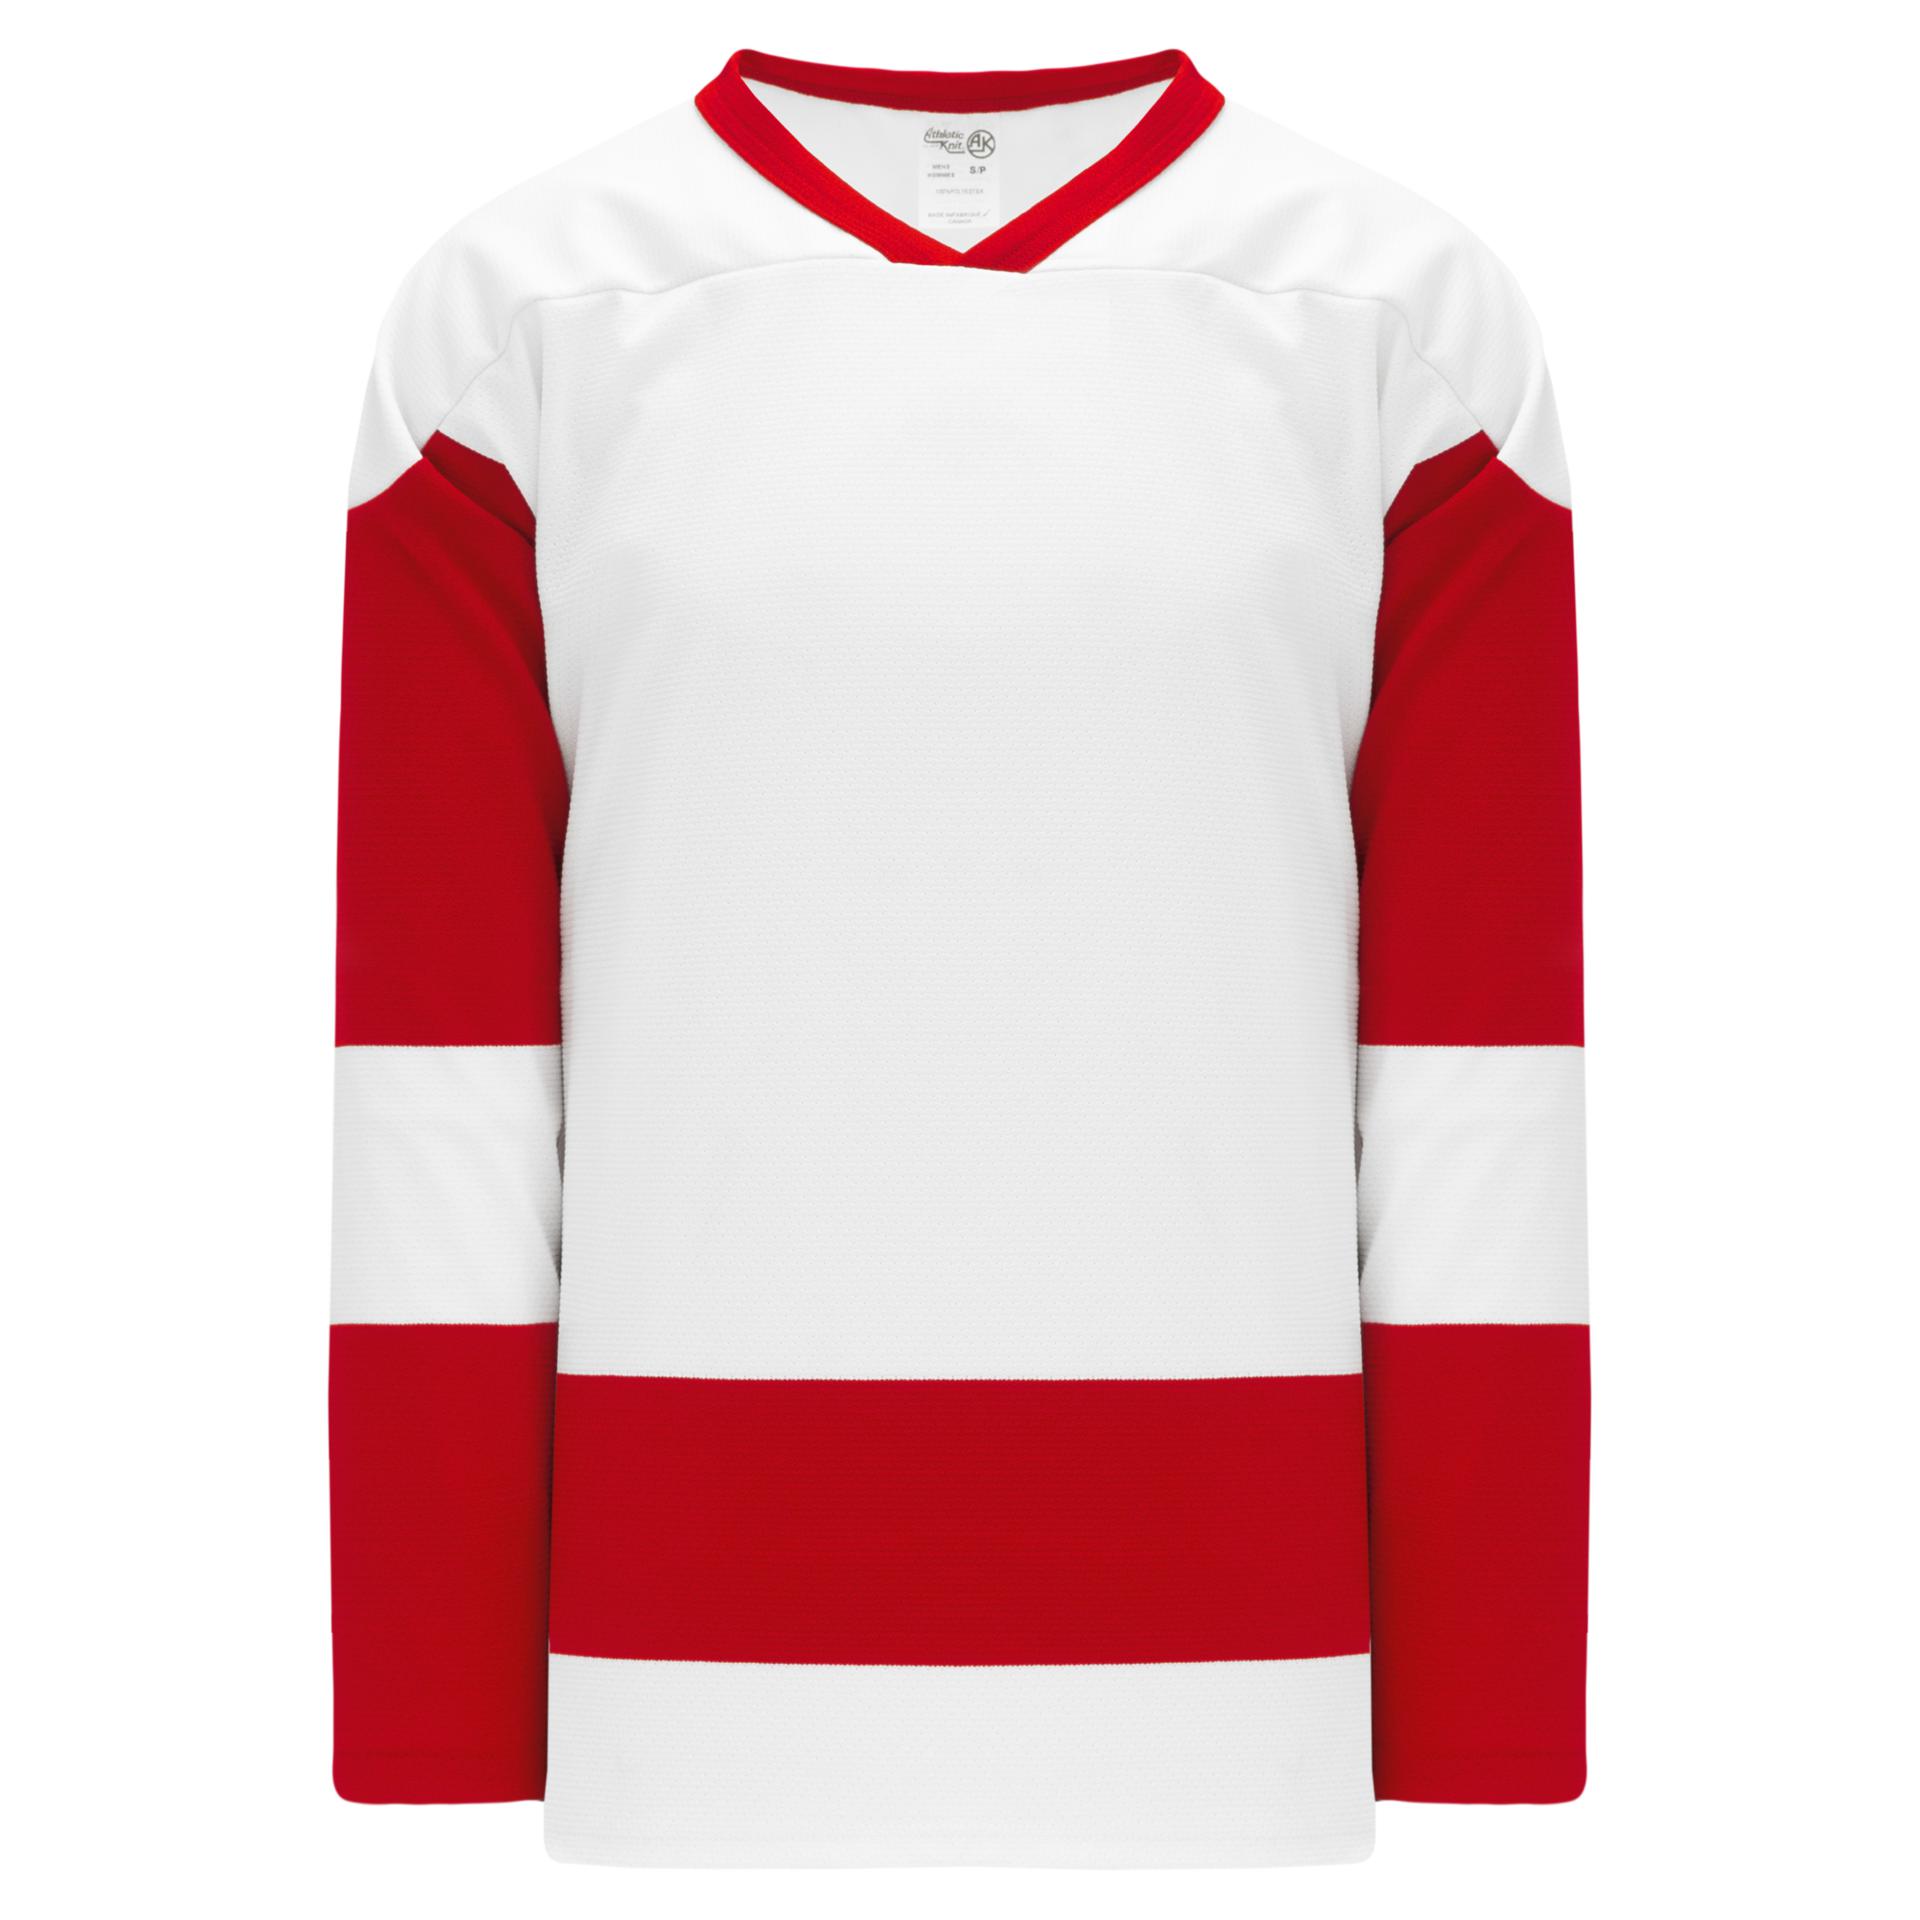 detroit red wings blank jersey